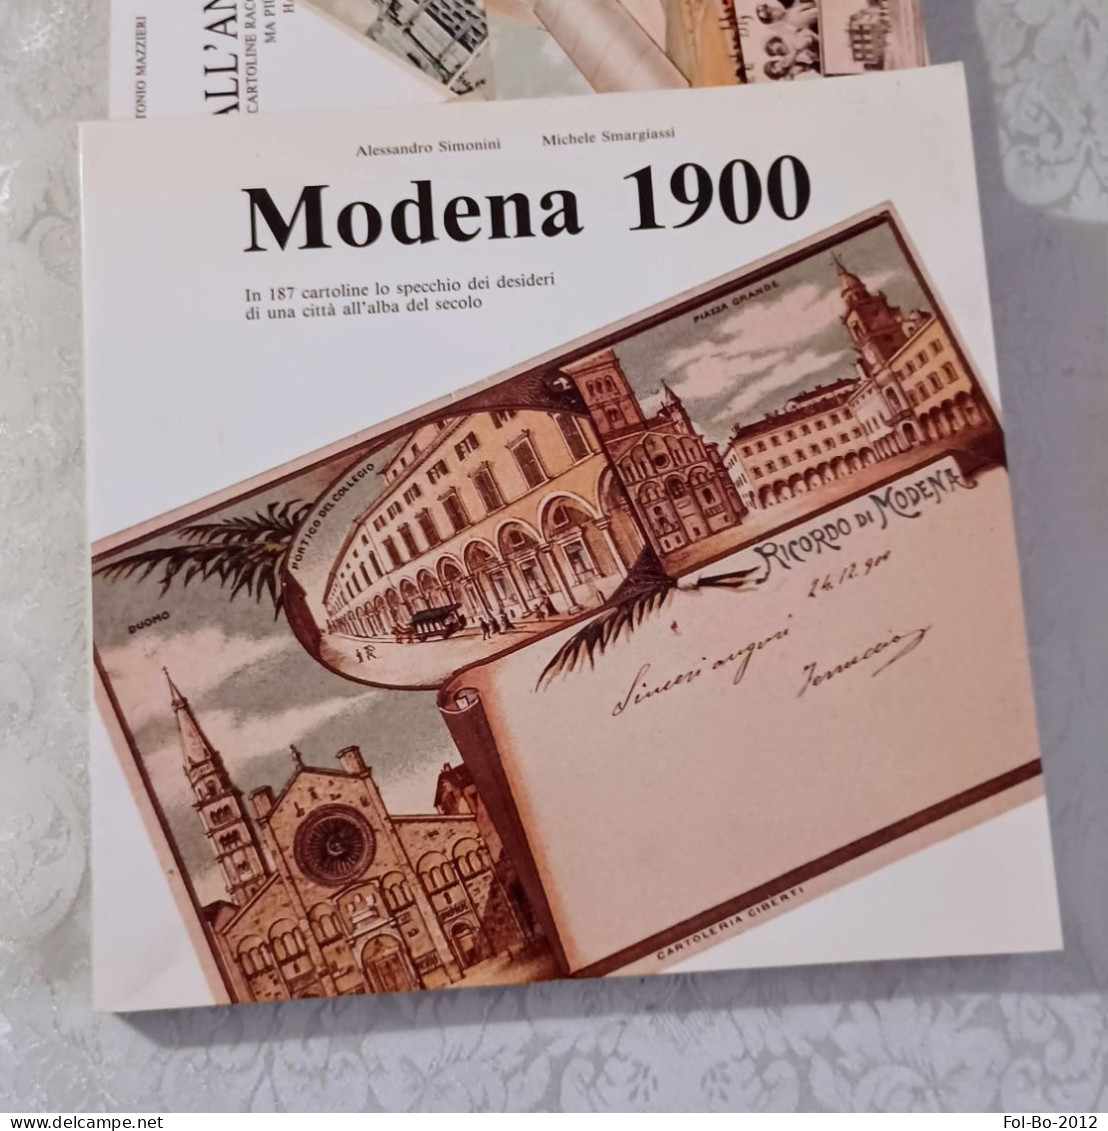 Modena 1900in 187 Cartoline Del 1989 - Libri & Cataloghi